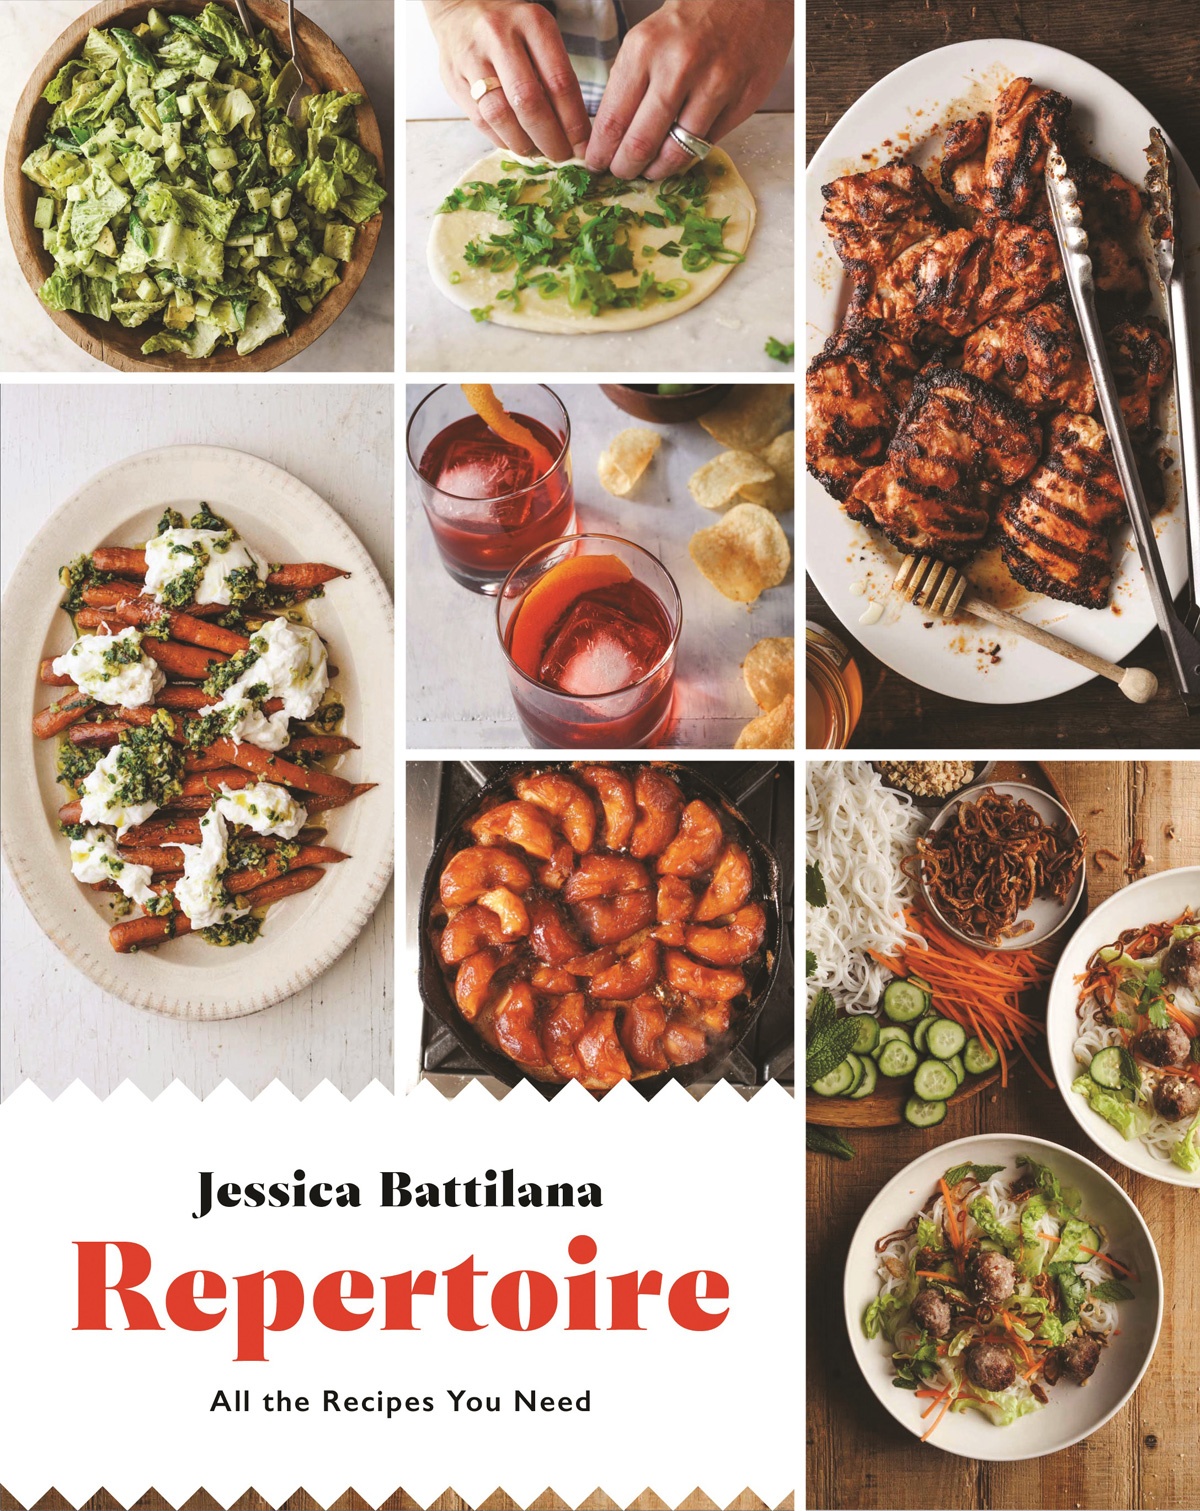 Book cover of Repertoire by Jessica Battilana